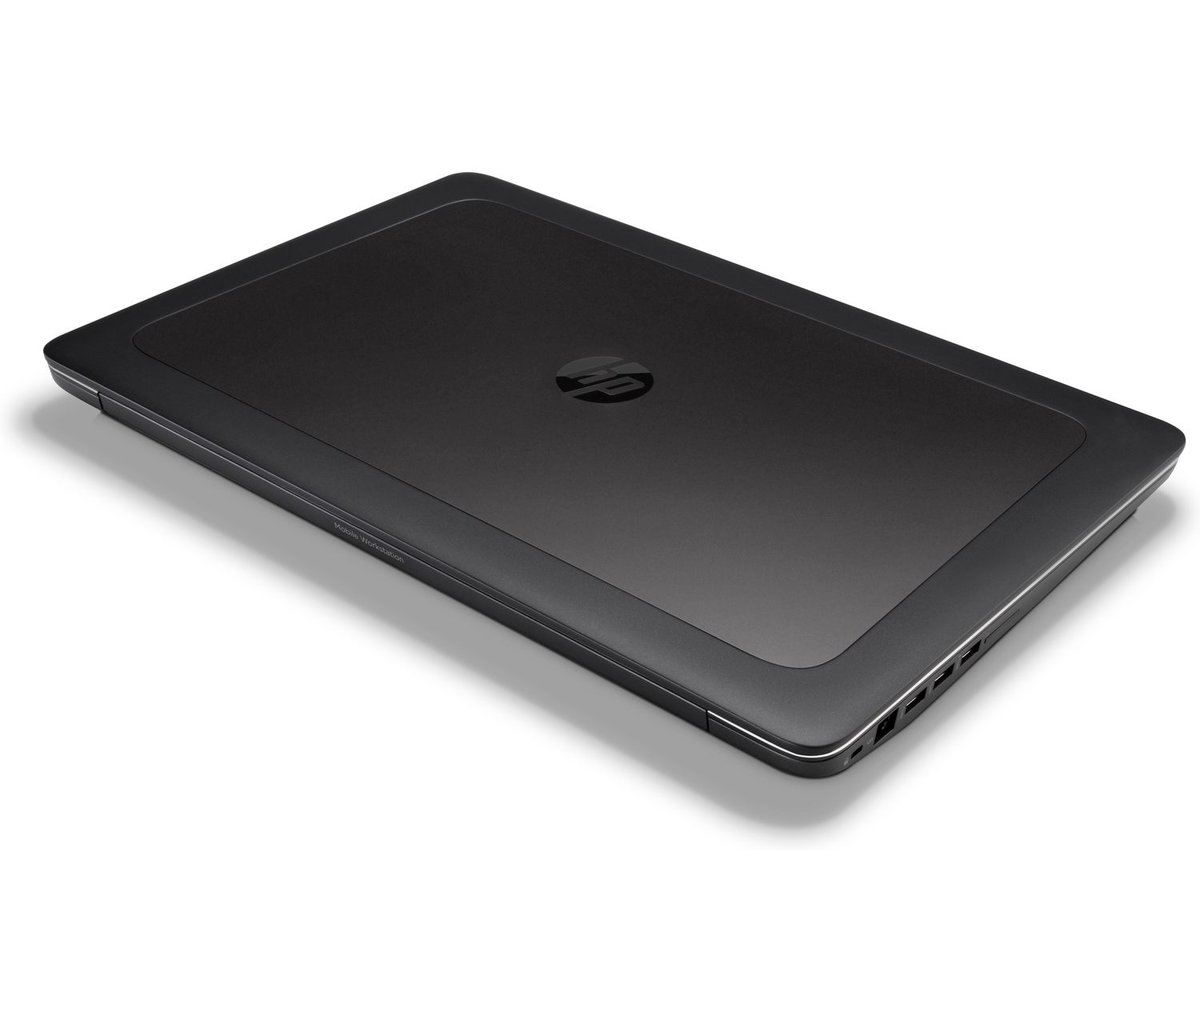 HP ZBook 17 G4